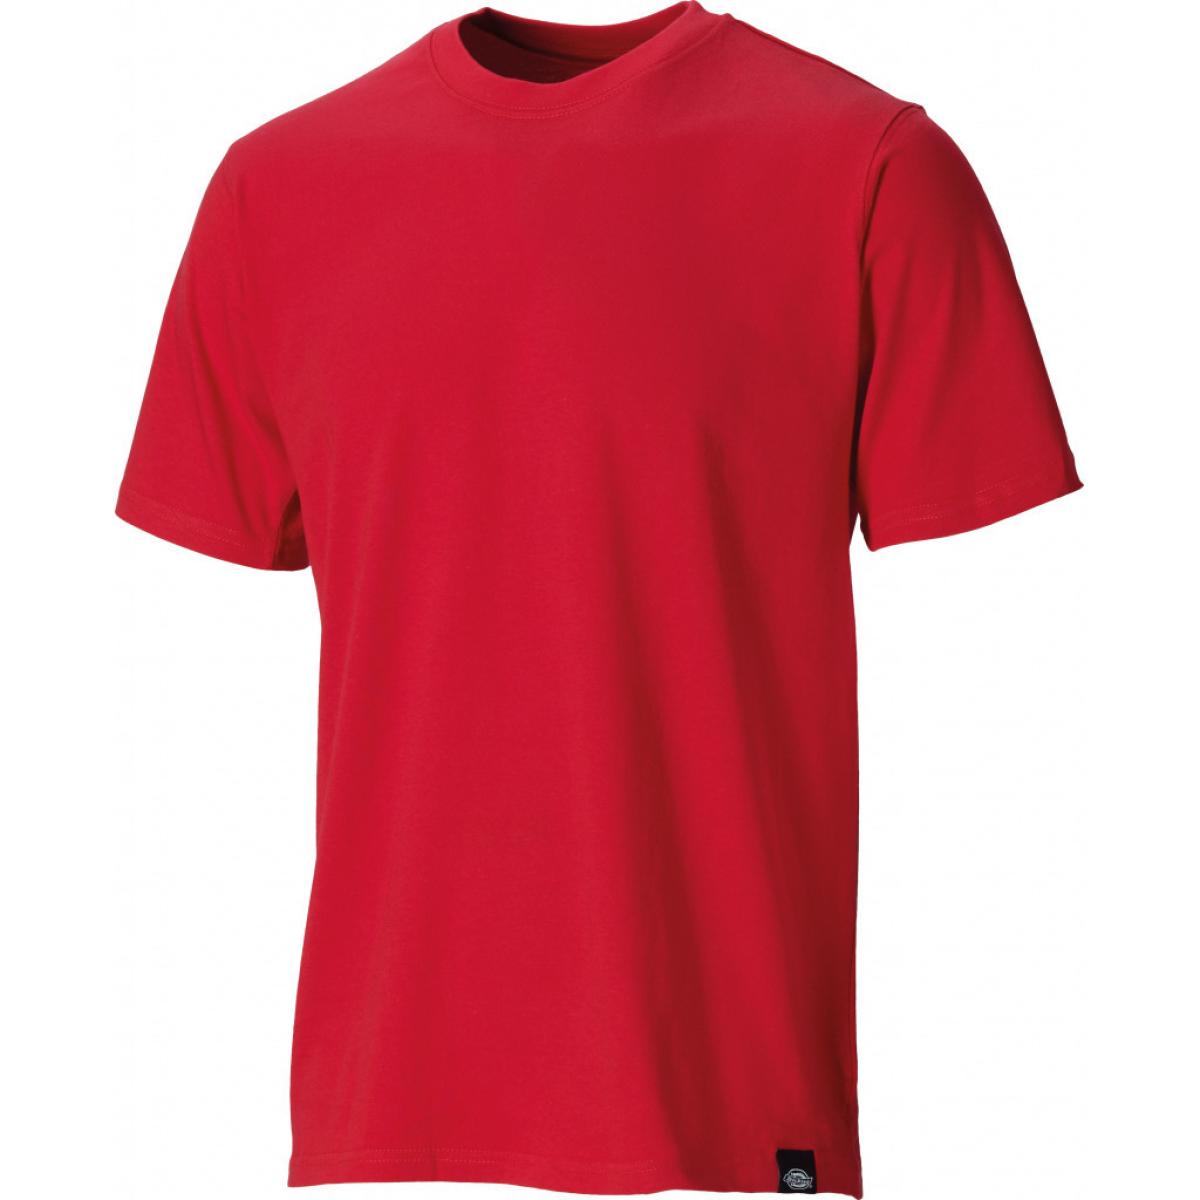 Hersteller: Dickies Herstellernummer: SH34225 Artikelbezeichnung: T-Shirt Farbe: Rot